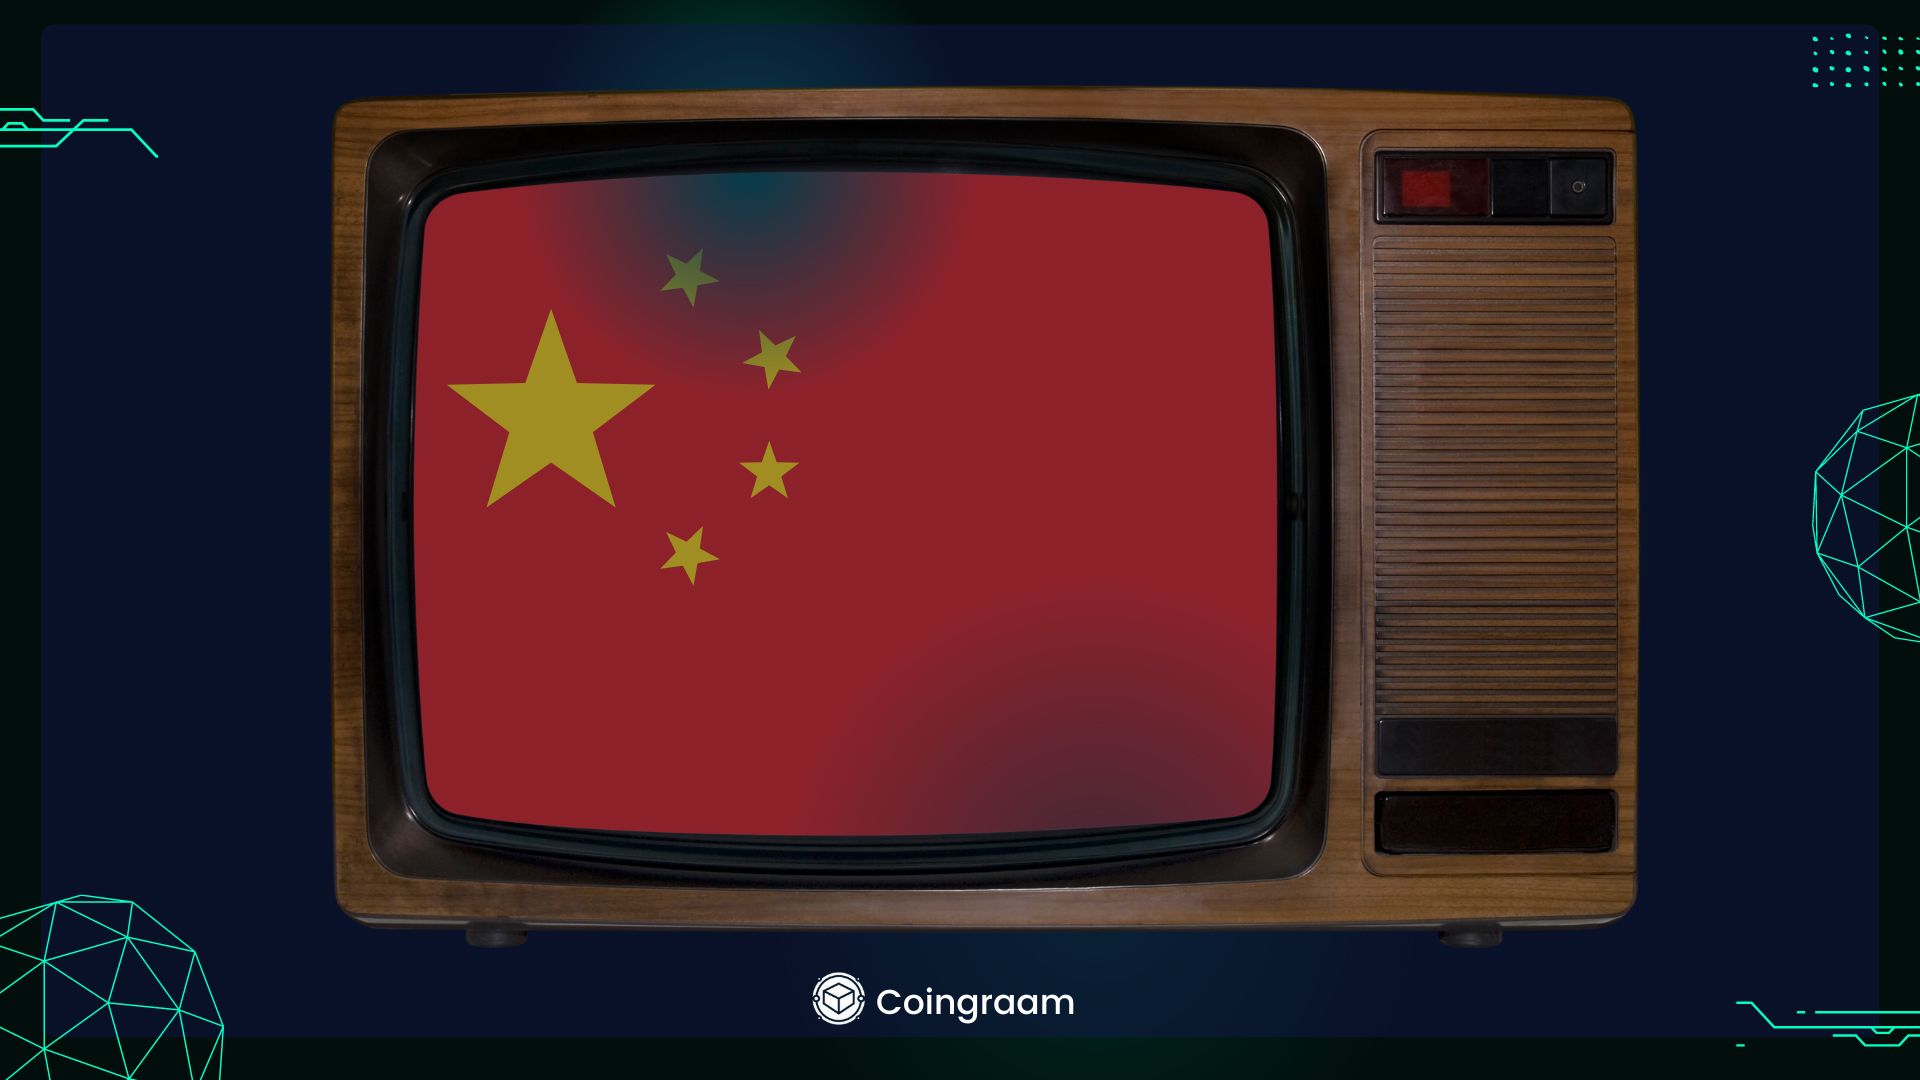  پخش برنامه‌های مرتبط با بیت‌کوین در تلویزیون ملی چین!

